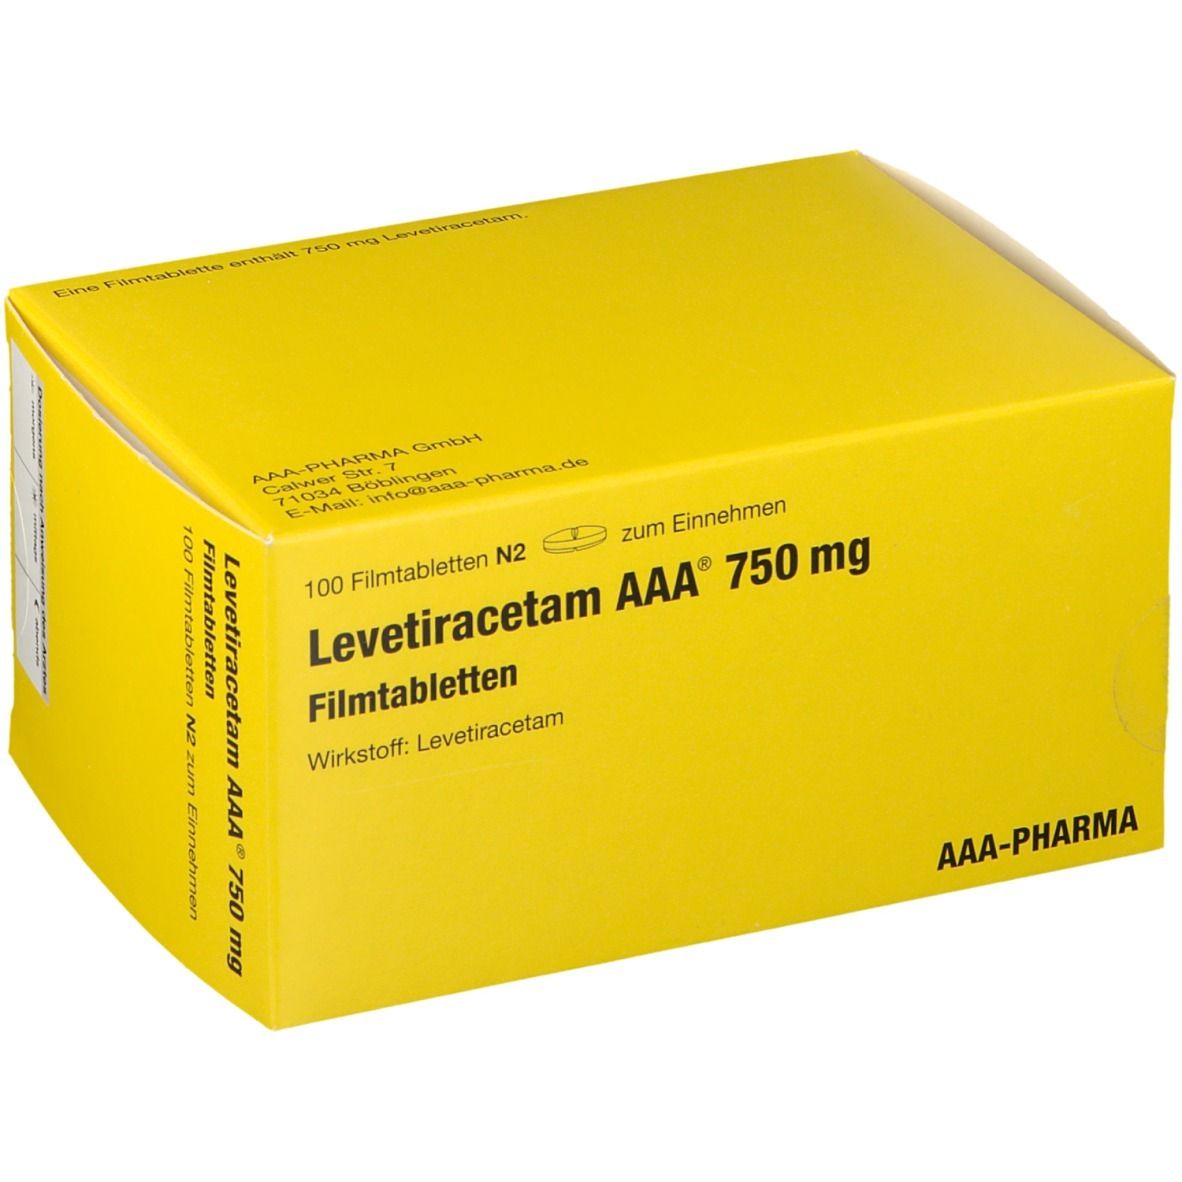 Levetiracetam AAA® 750 mg